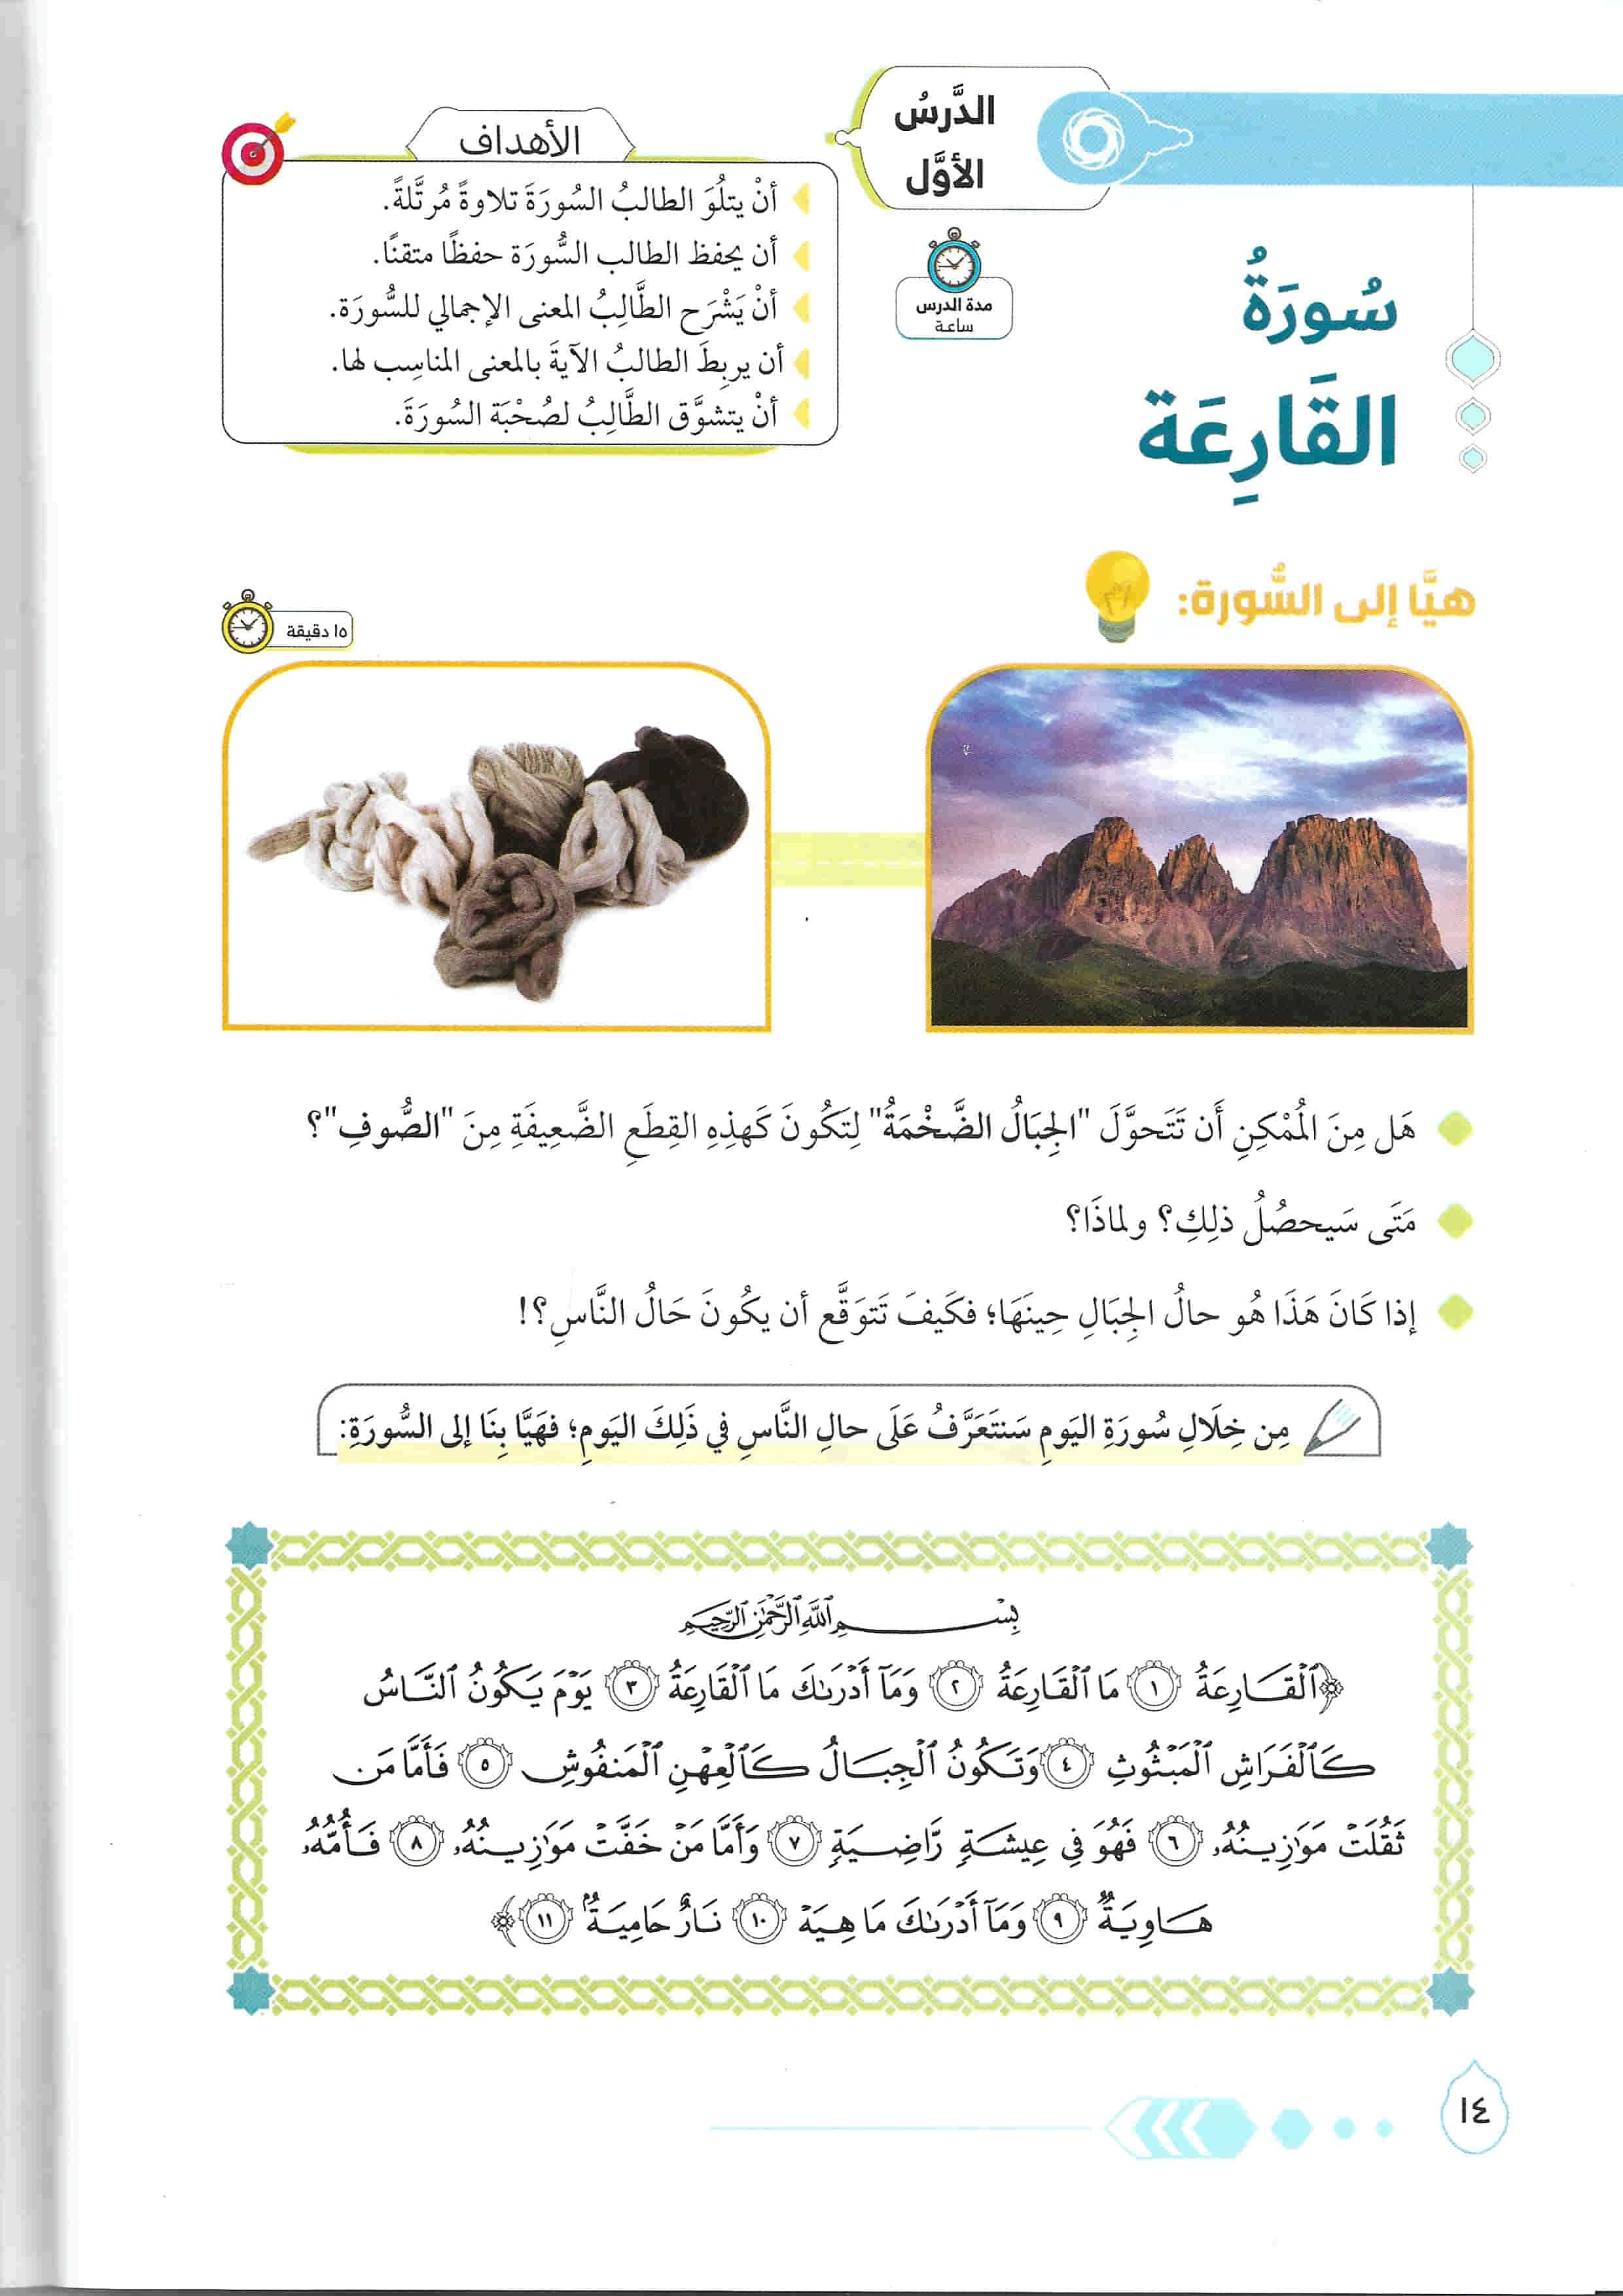 كتاب التذوق القرآني 2 - تربية الناشئة على التفكر والتخلق كتب أطفال فريق مركز آيات